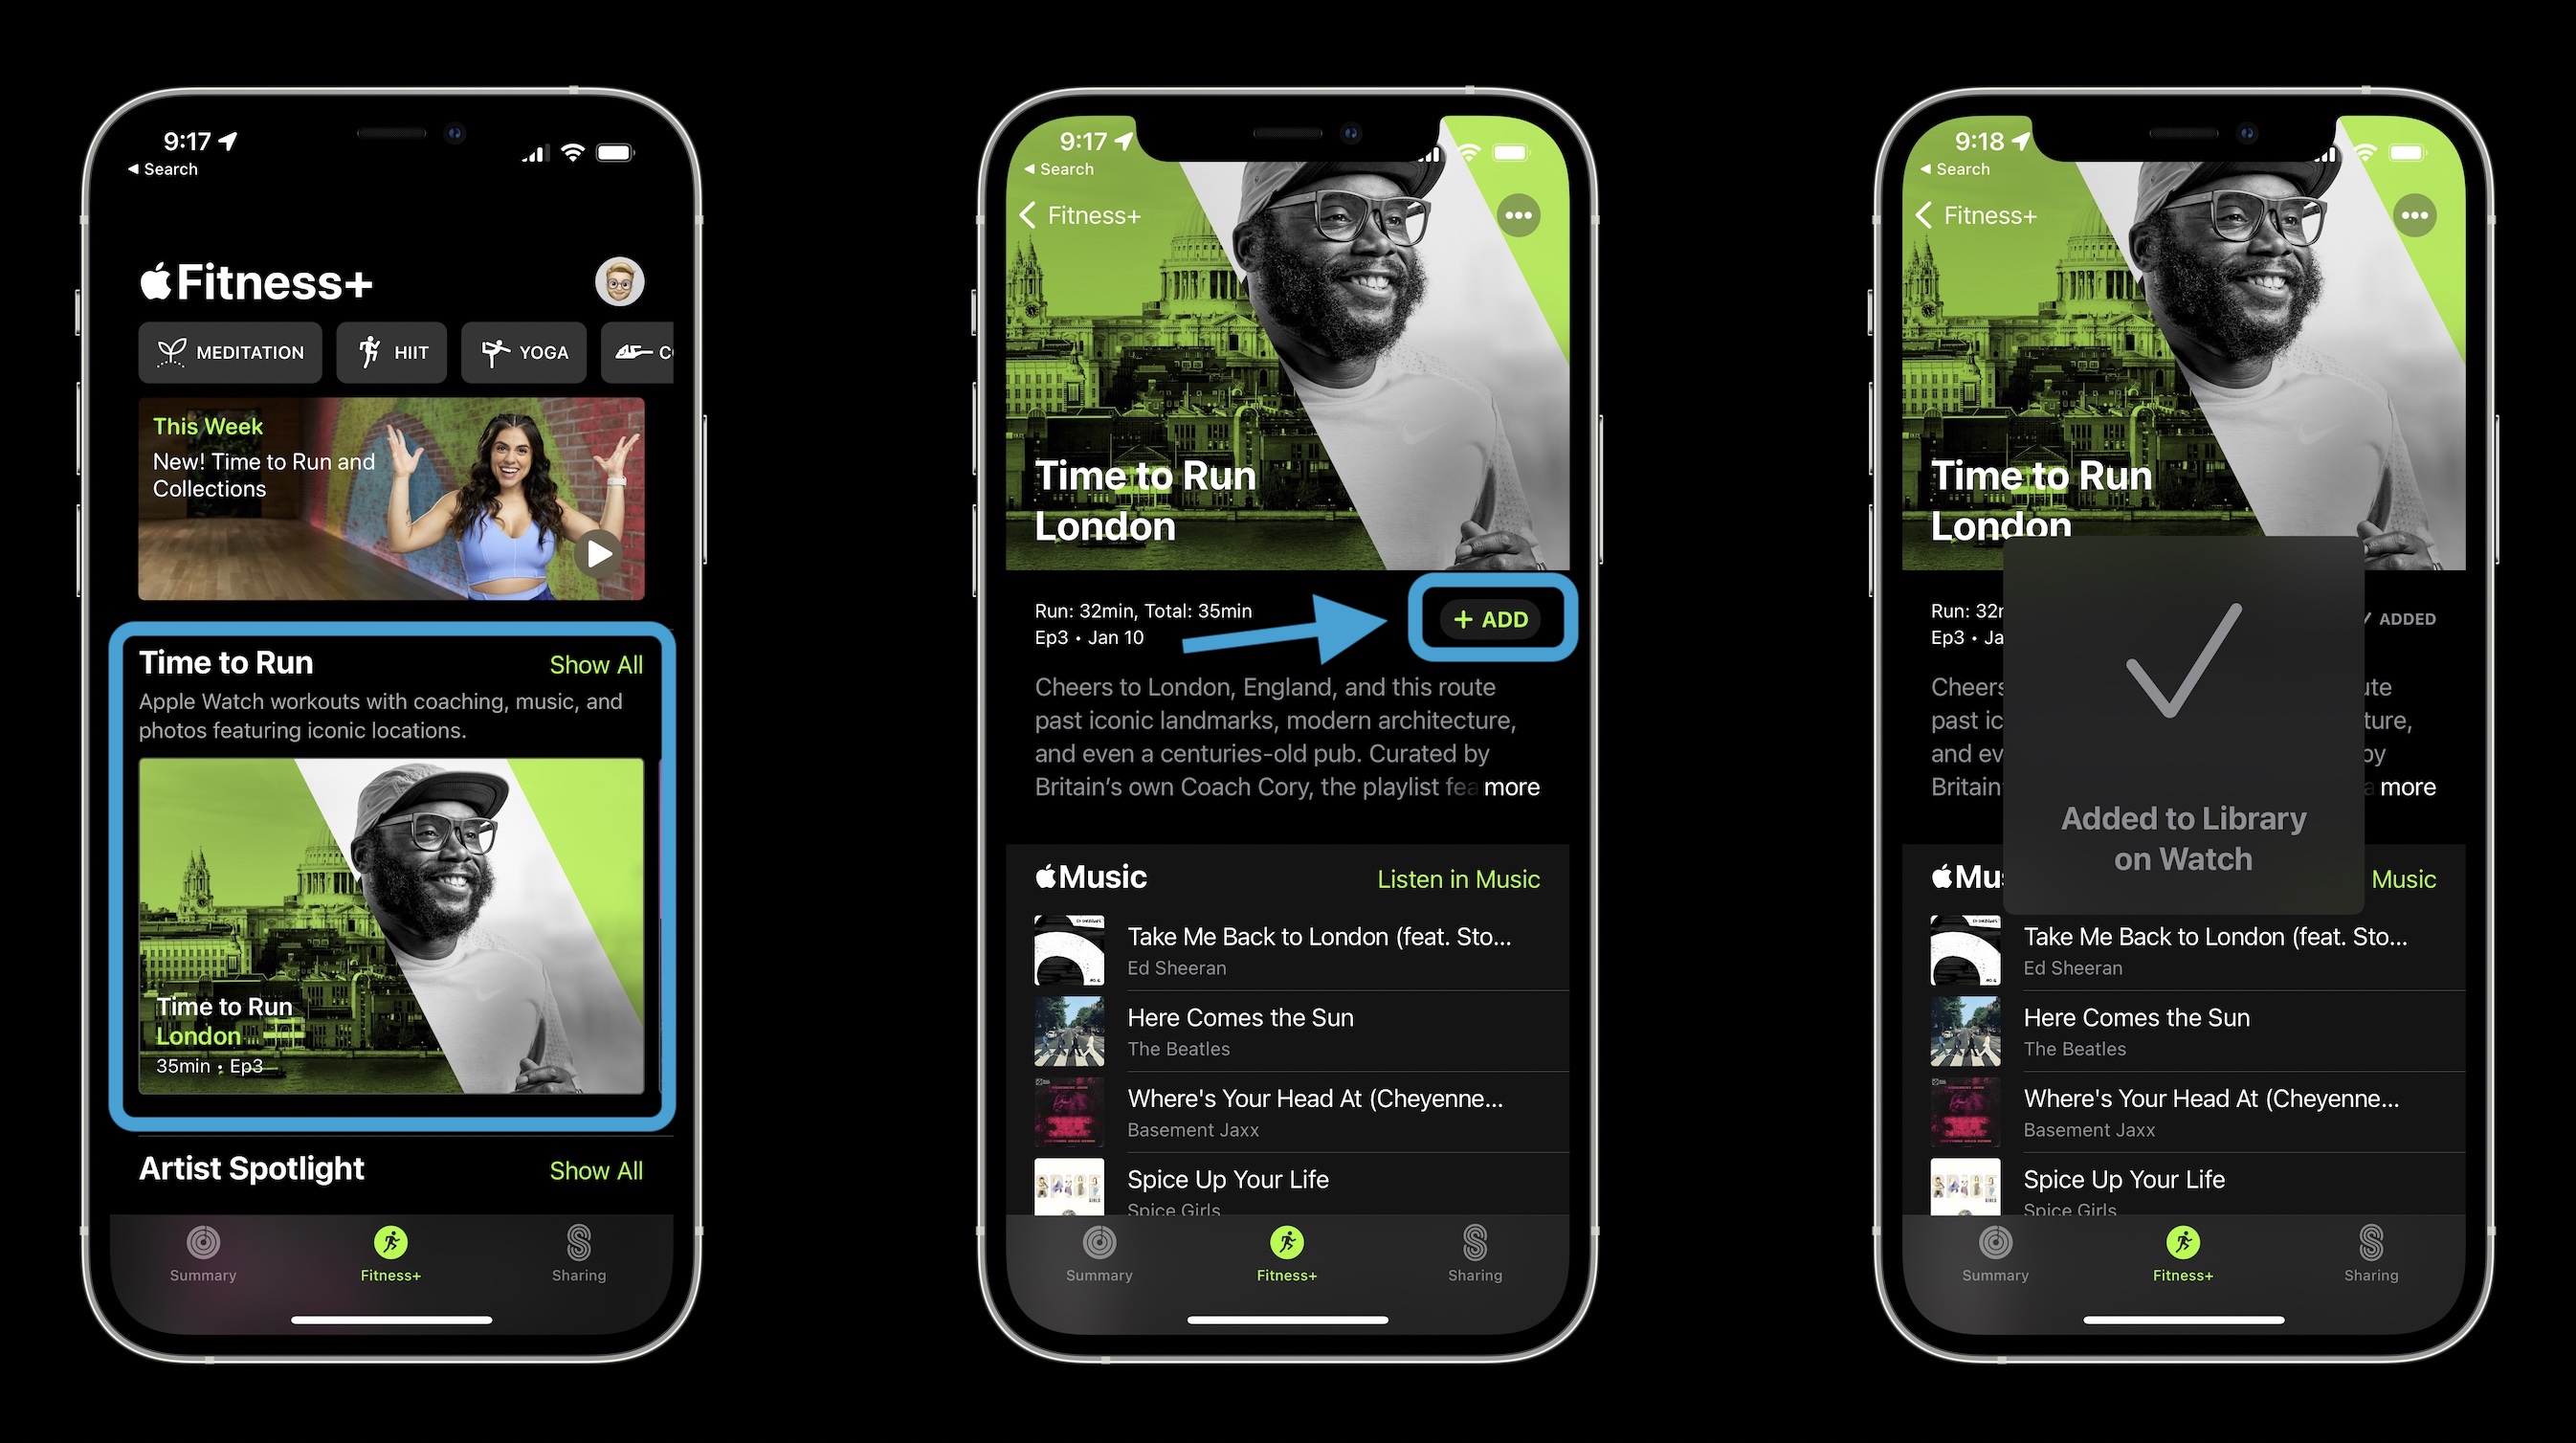 So erhalten Sie Time to Run auf der Apple Watch mit Fitness+ – Hinzufügen von iPhone in der Fitness-App